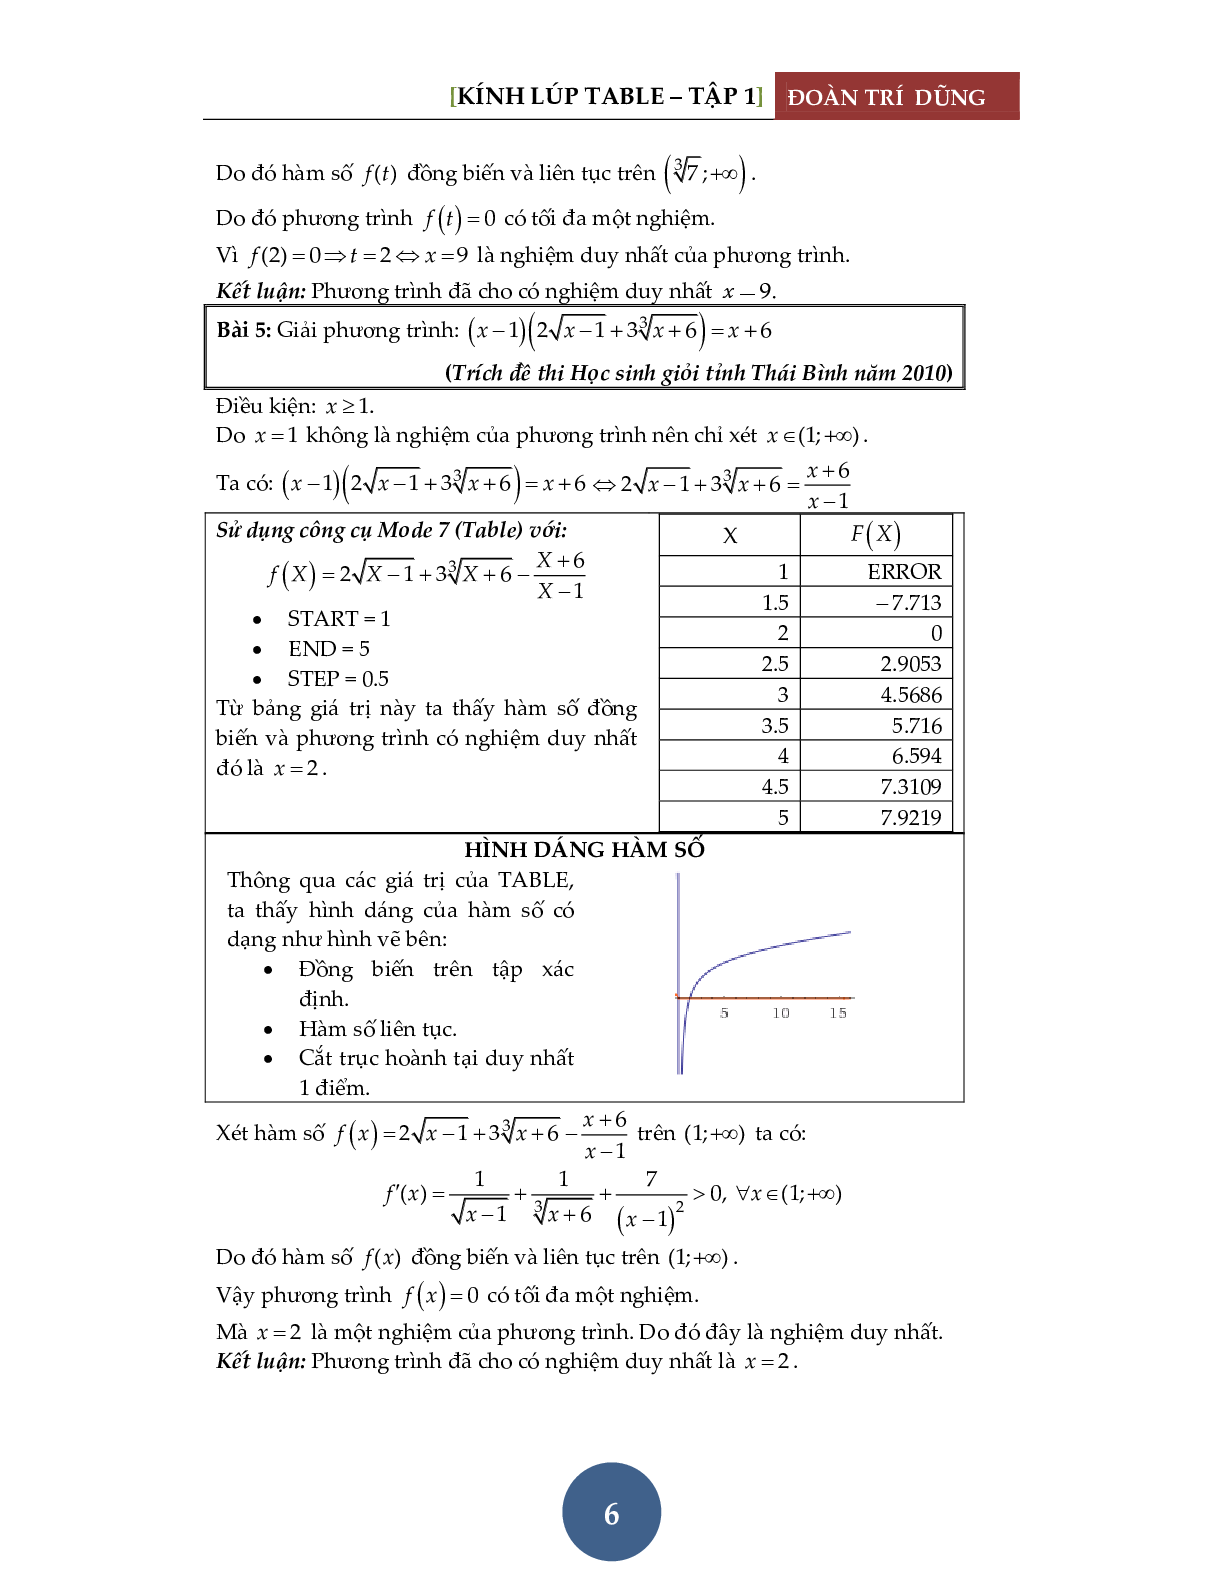 Giải phương trình bằng máy tính Casio – Tập 1: Đánh giá hàm đơn điệu (trang 7)